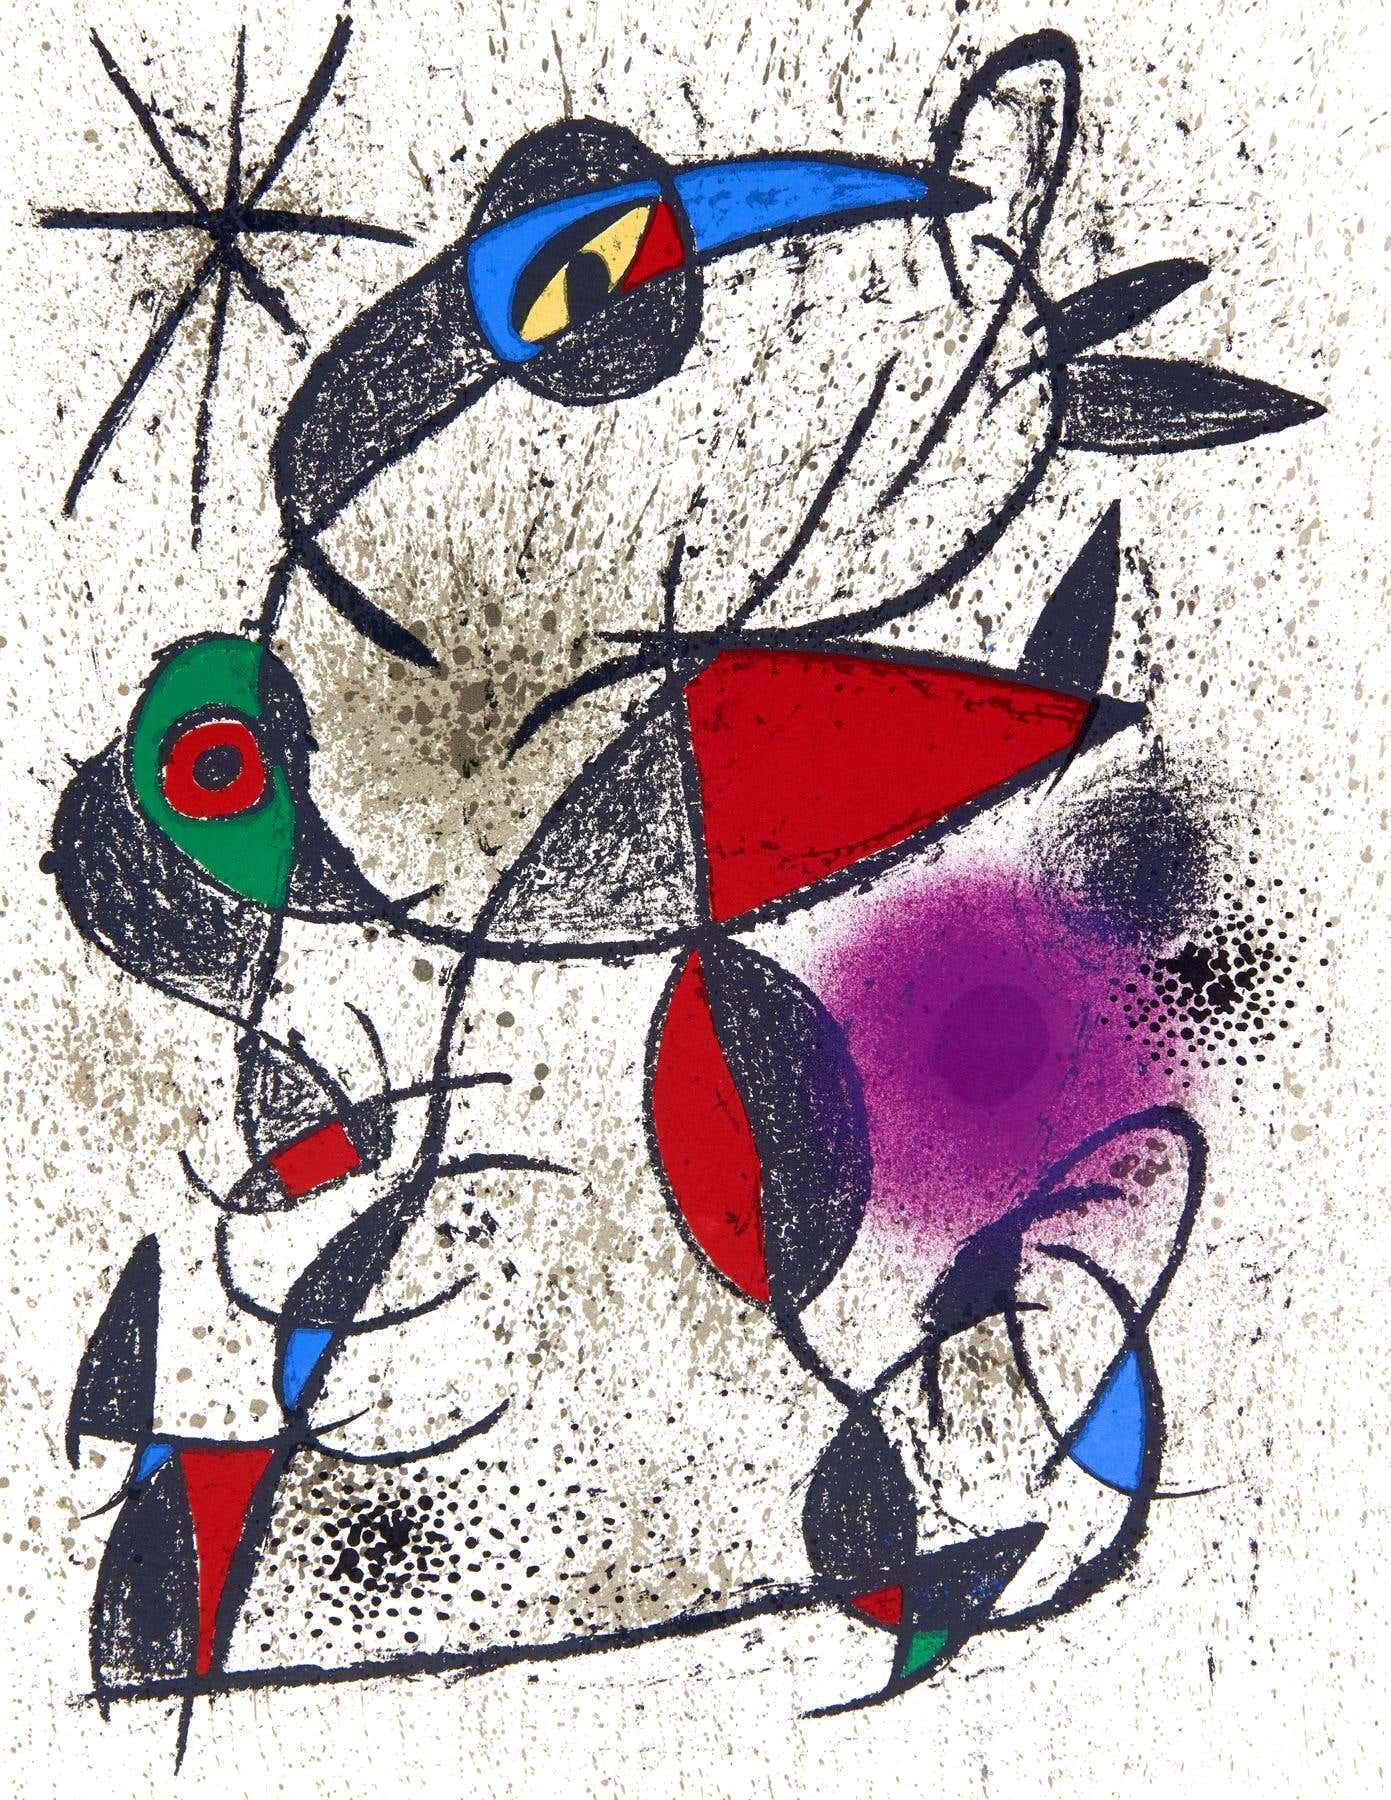 Miró, Faillie du calcaire, Souvenirs et portraits d'artistes (dopo)